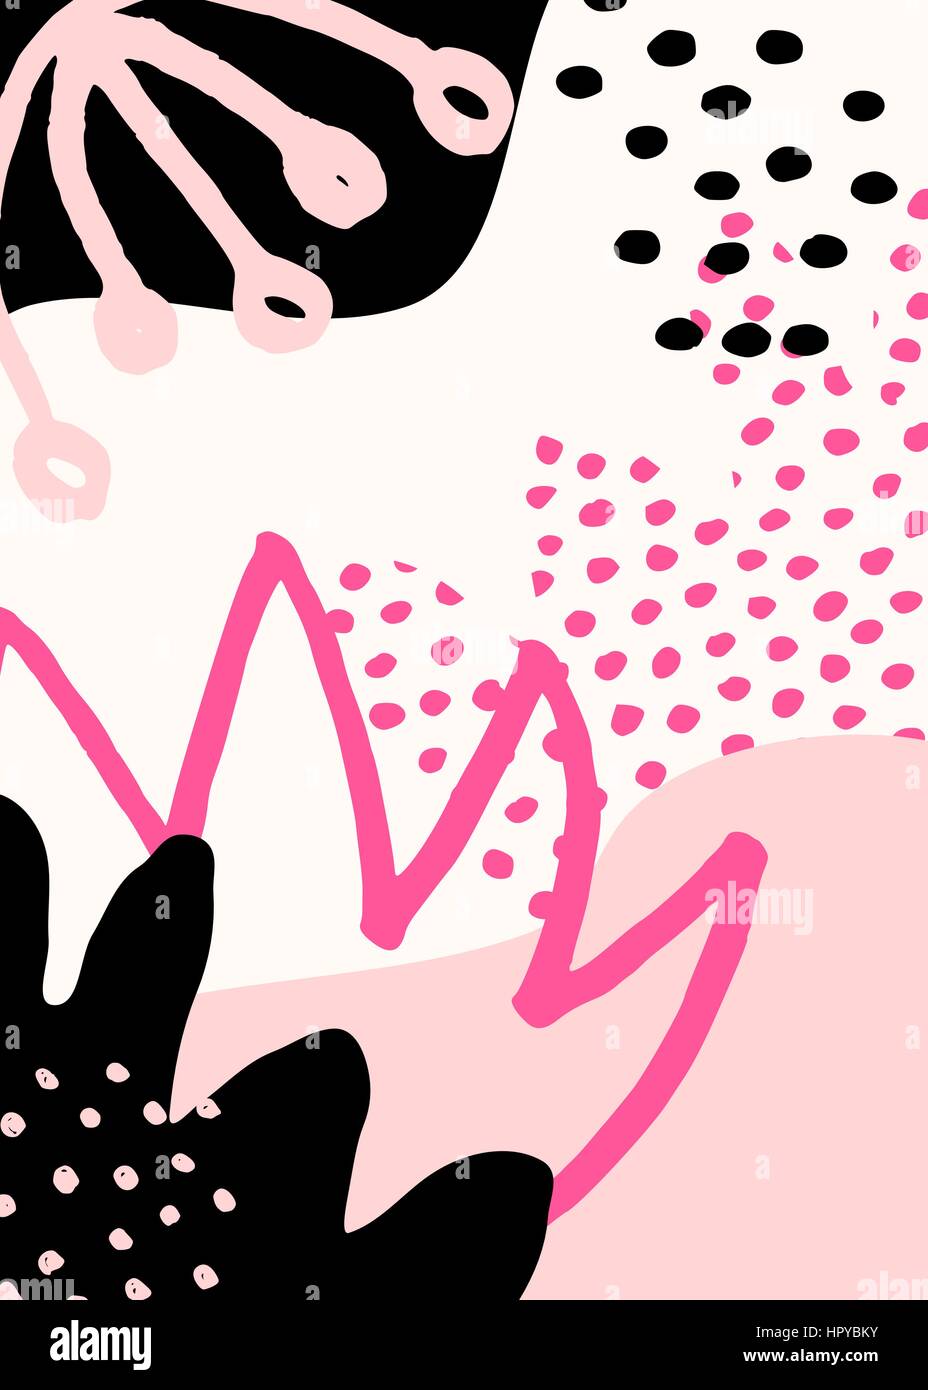 Collage Stildesign mit abstrakten und organische Formen in Pastell rosa, Pink, schwarz und Creme. Abstrakte Textil, Geschenkpapier, Wand-Kunst-Design. Stock Vektor